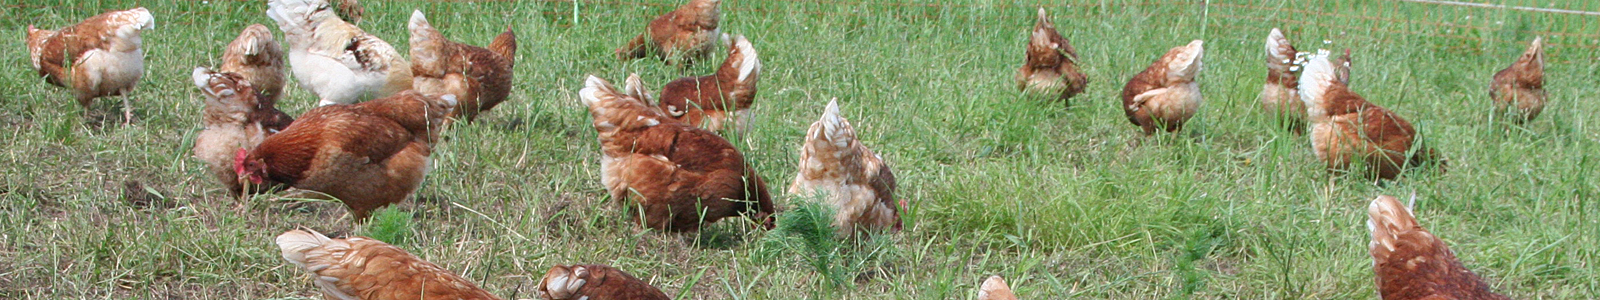 Hühner auf Wiese ©K.Cypzirsch